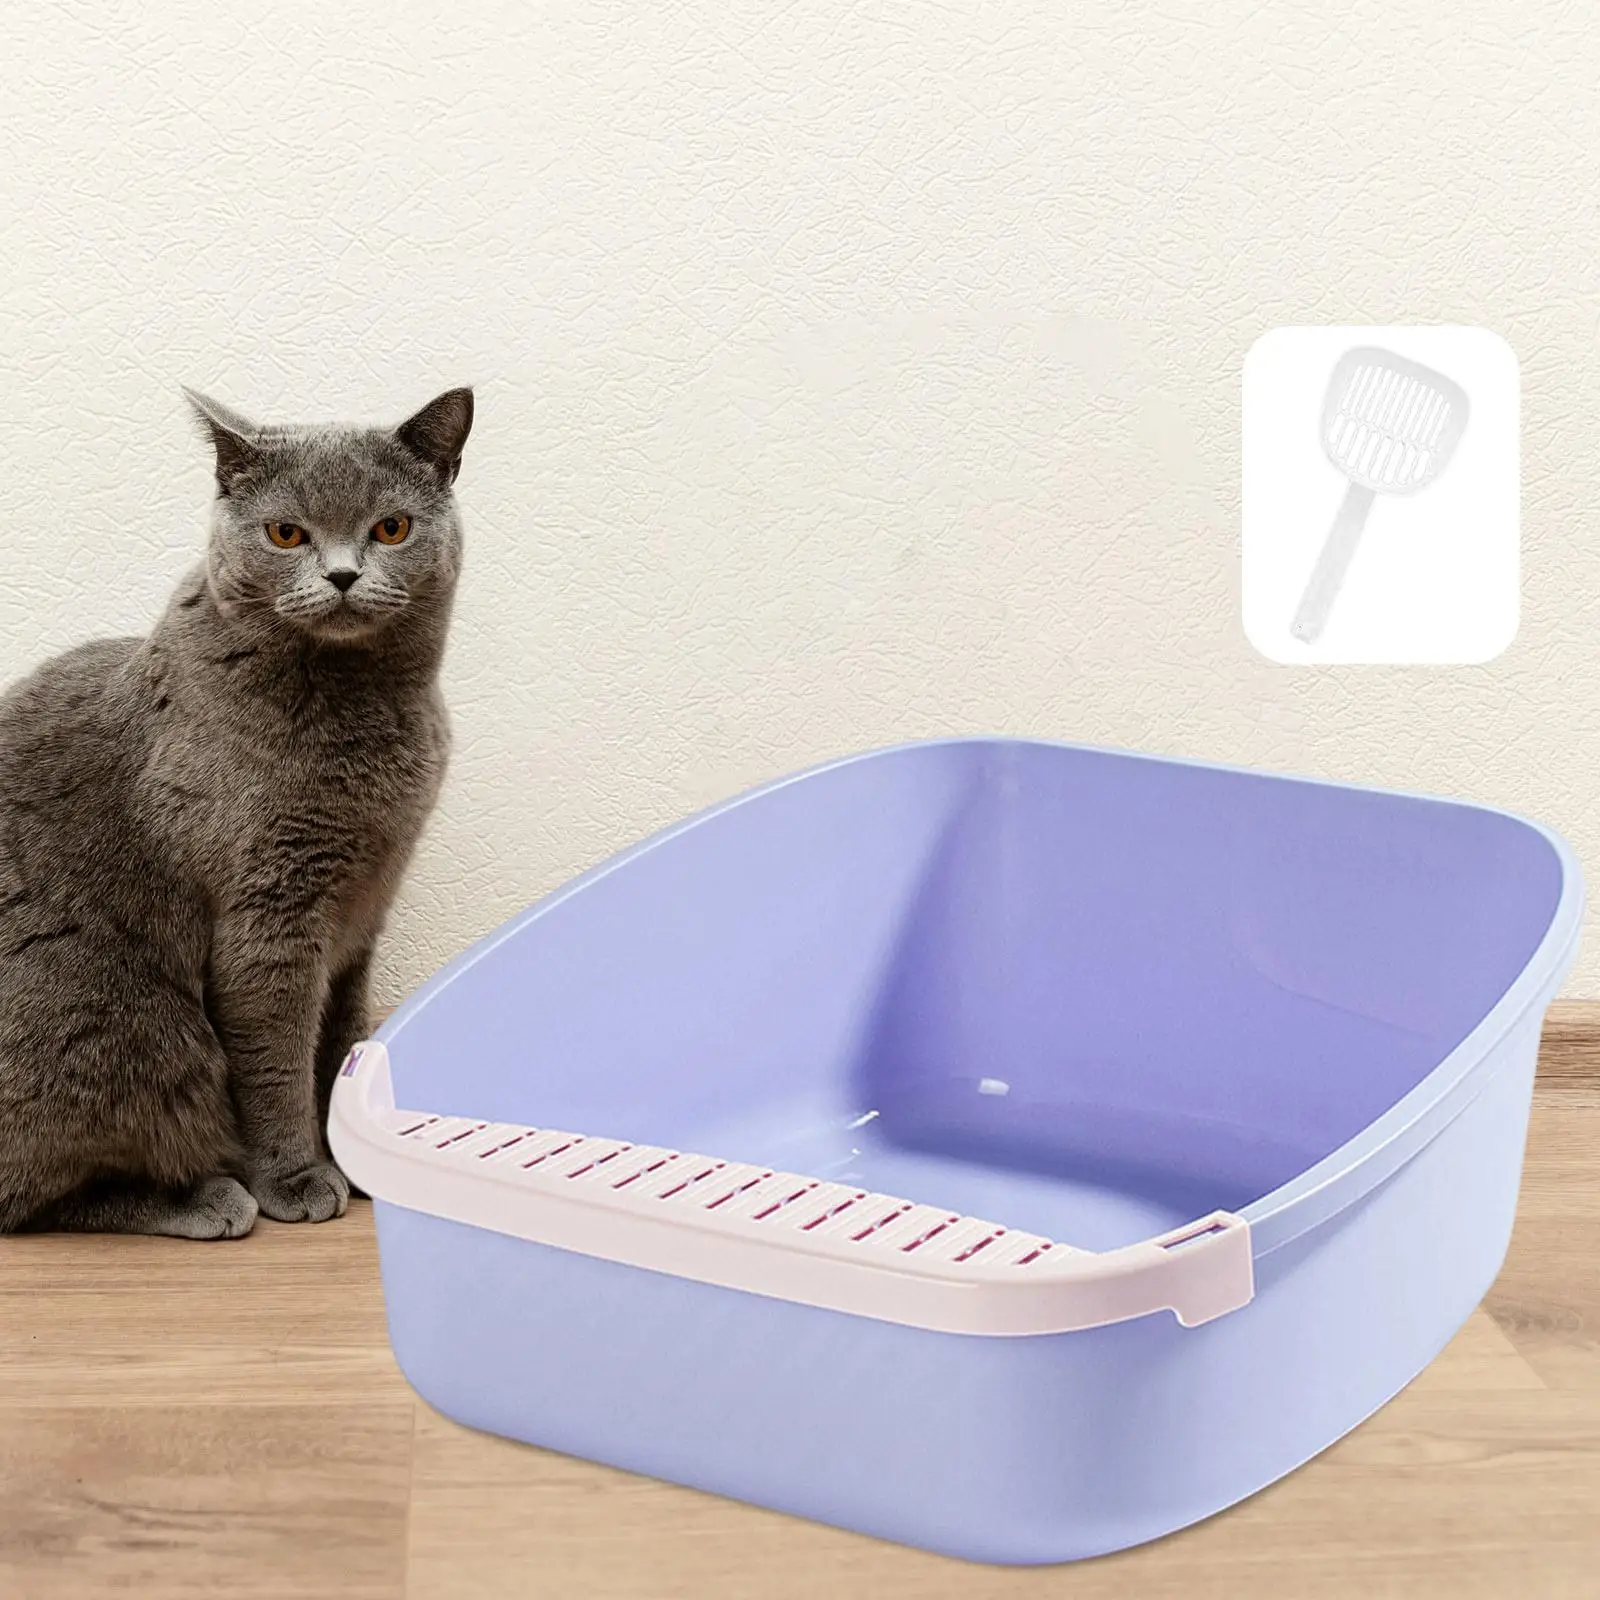 Cat Litter Box Lightweight Pet Litter Tray for Rabbit Travel Accessories